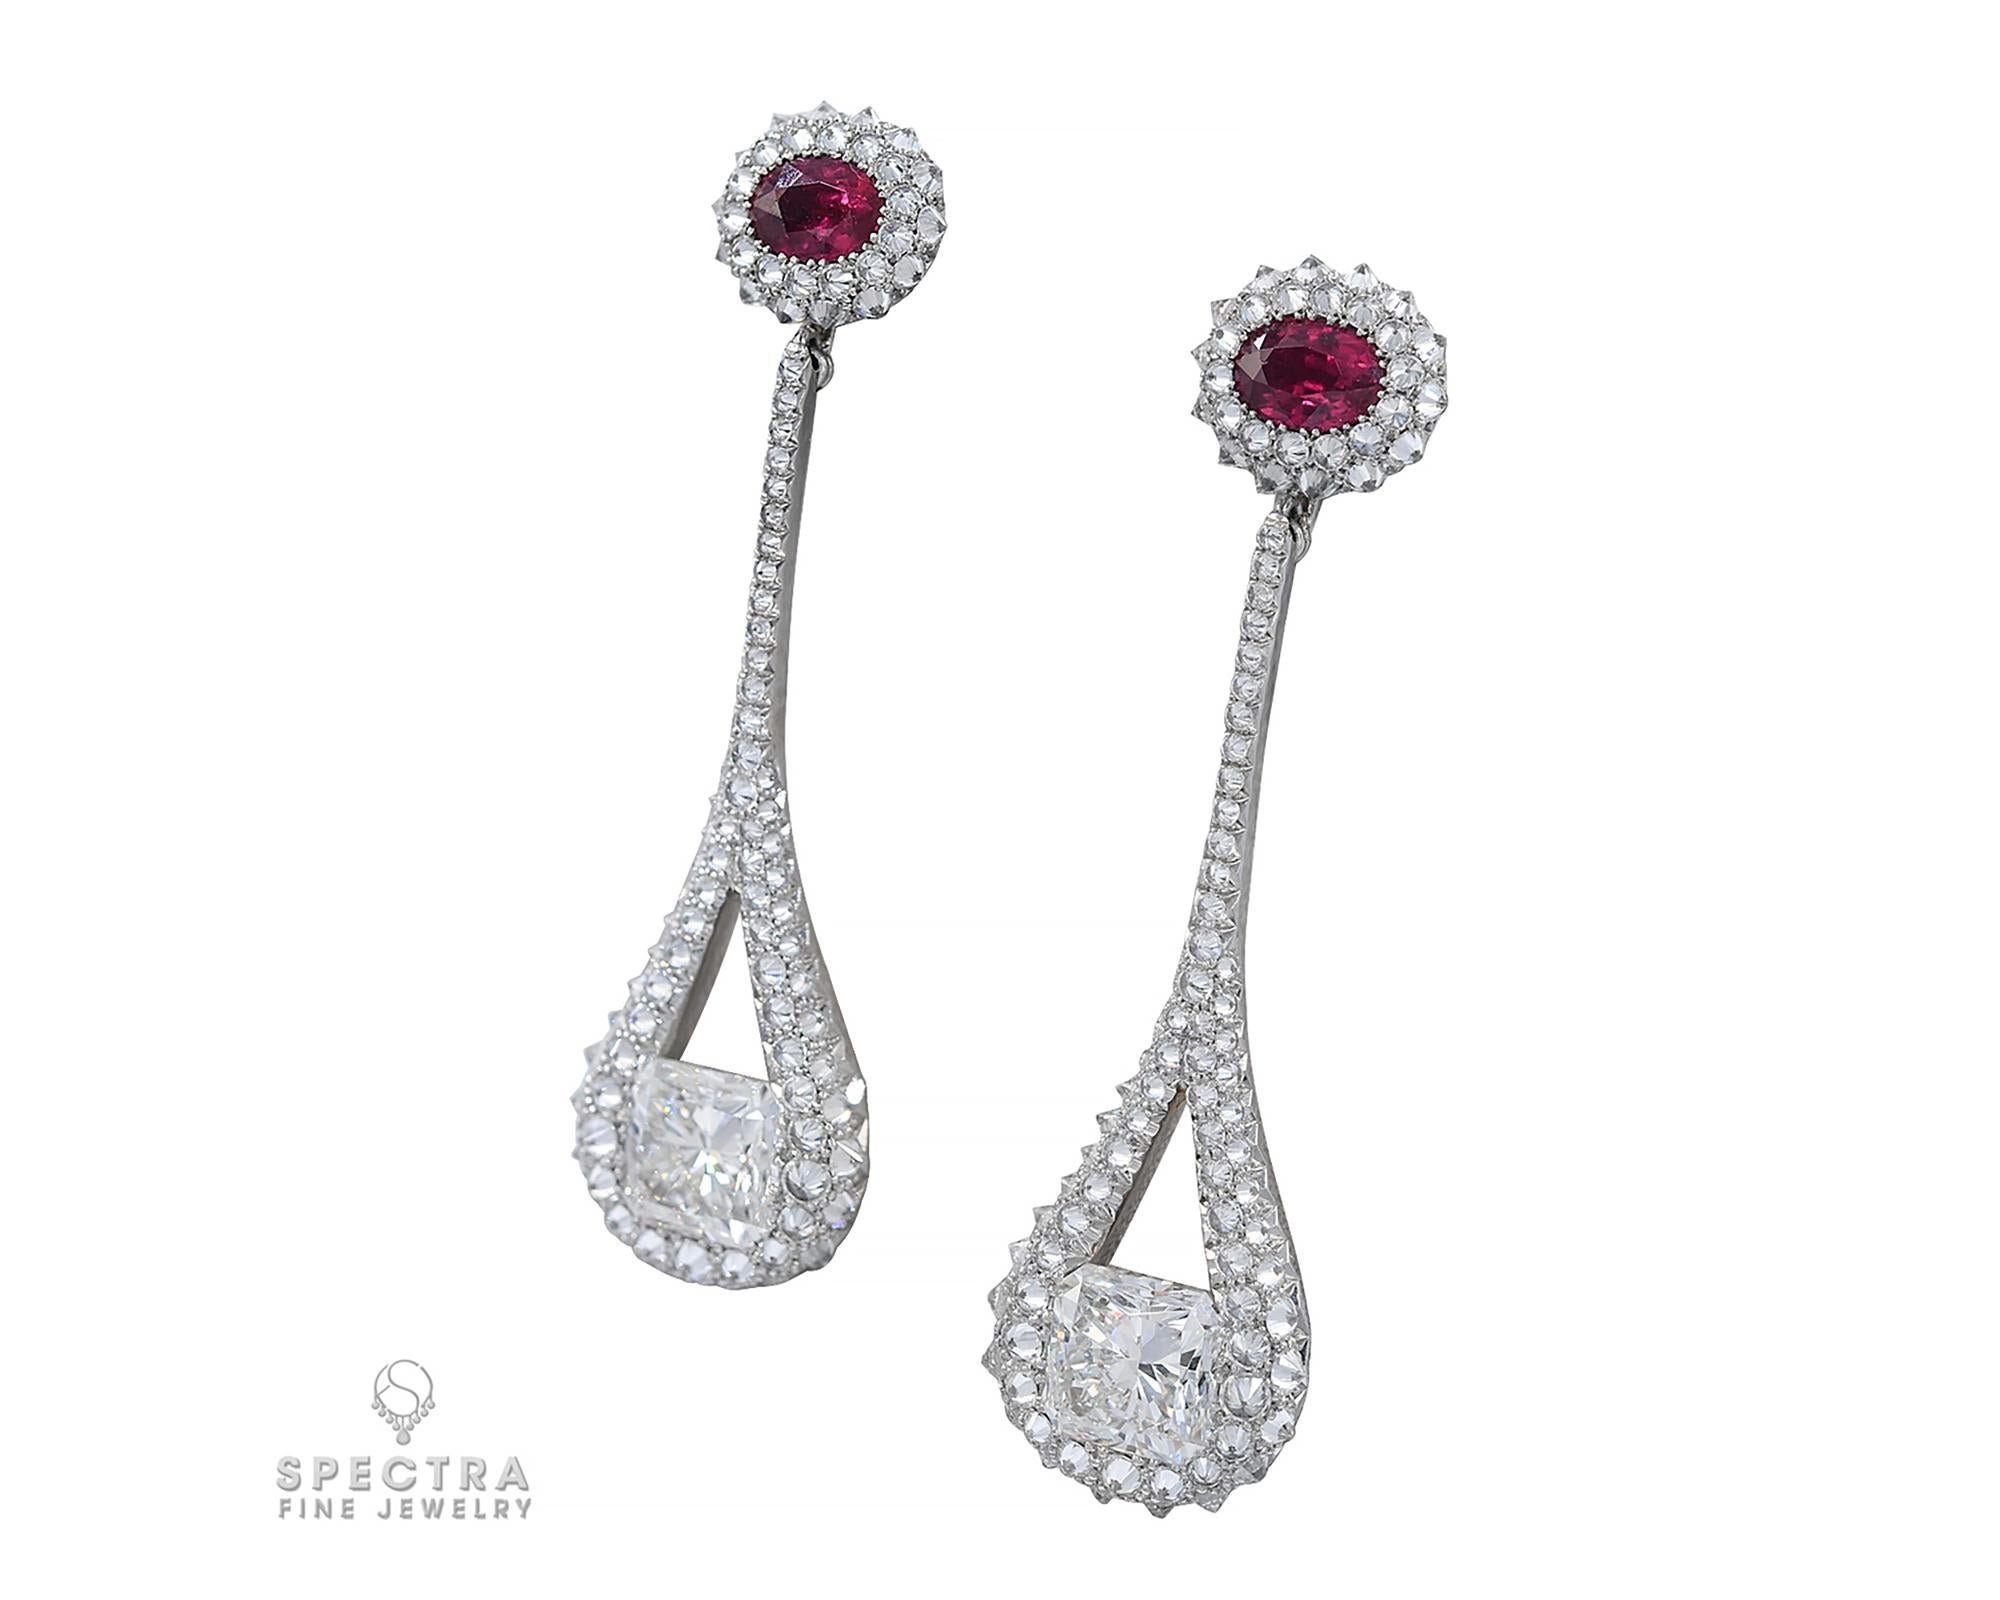 Mixed Cut Spectra Fine Jewelry, GIA Certified Diamond Ruby Drop Earrings For Sale